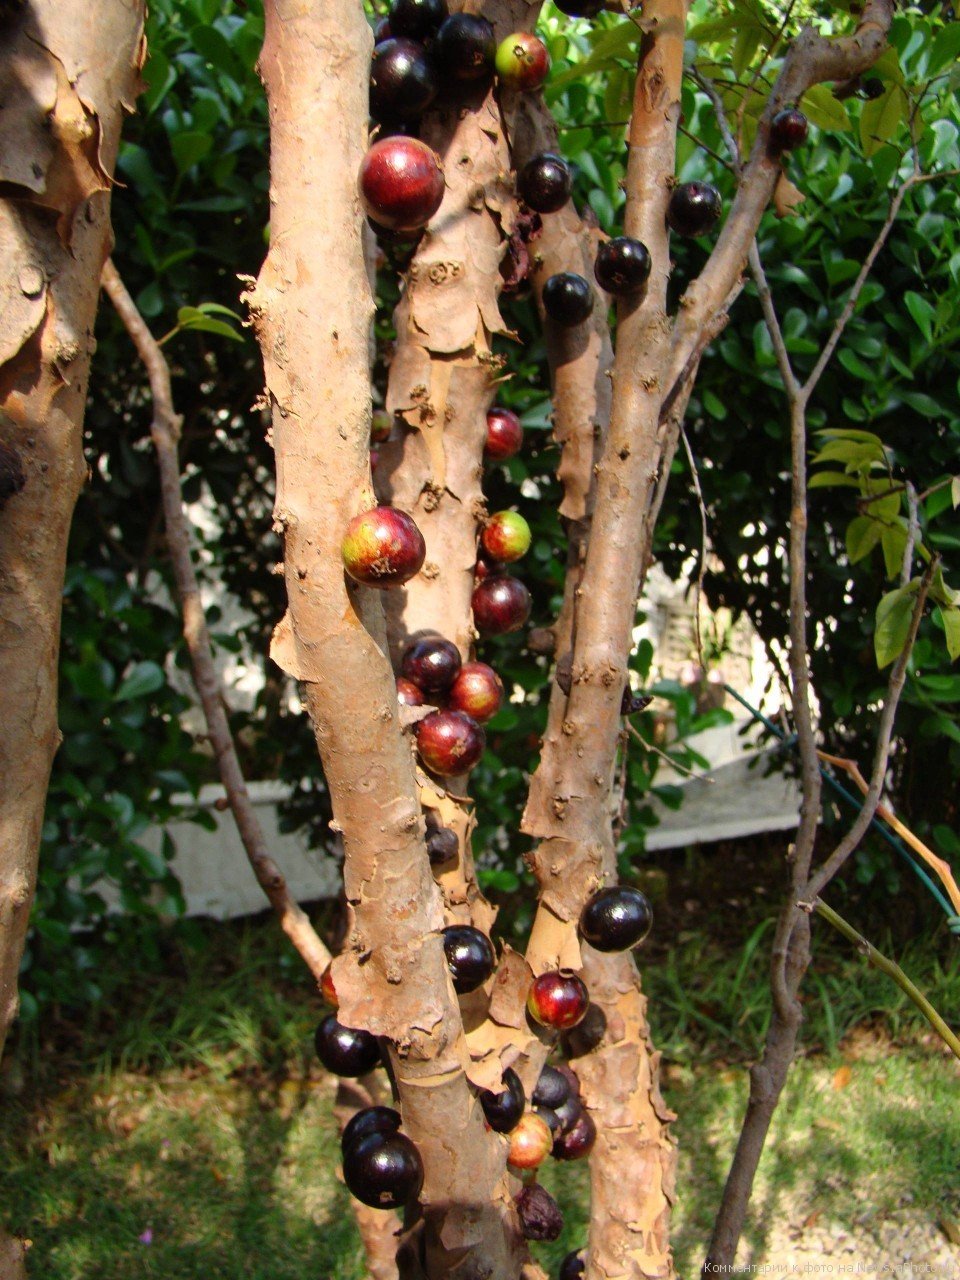 Фруктовый ствол. Виноградное дерево джаботикаба. Жаботикаба – бразильское виноградное дерево. Дерево с плодами на стволе джаботикаба. Вишня пирамидальная.